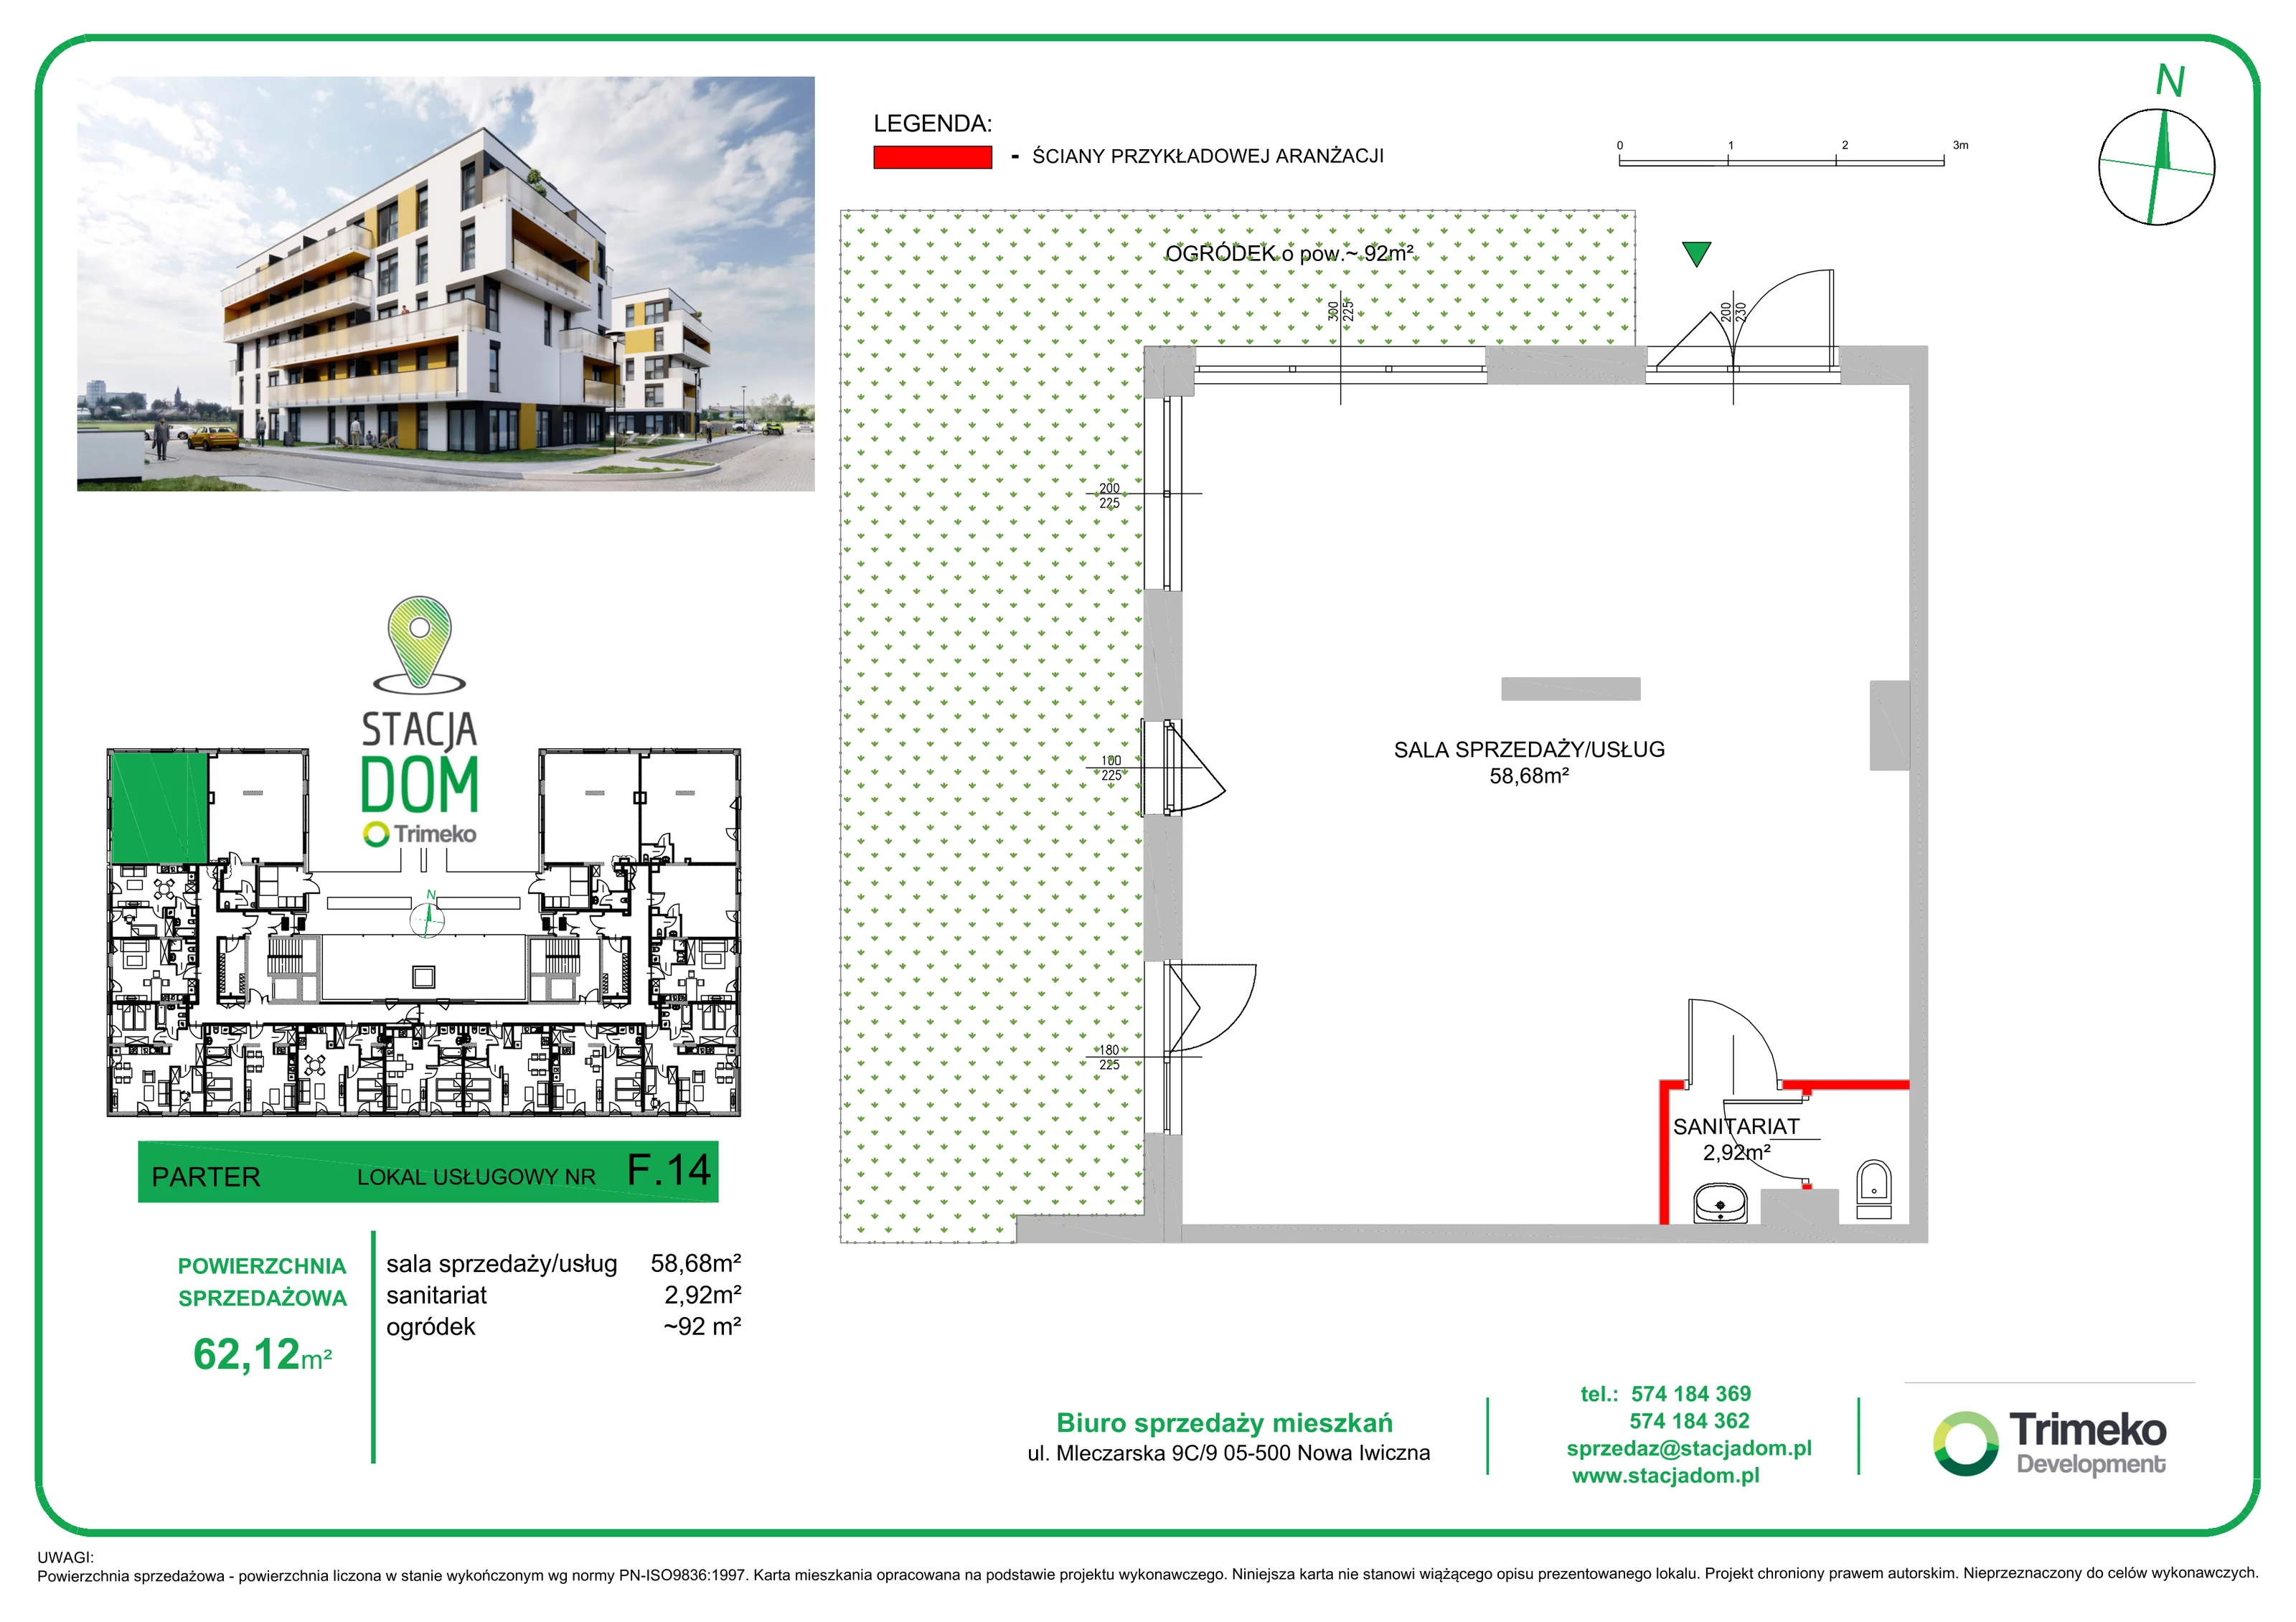 Lokal użytkowy 61,12 m², oferta nr F0.14 (I), Stacja Dom - lokale użytkowe, Nowa Iwiczna, ul. Mleczarska 9F